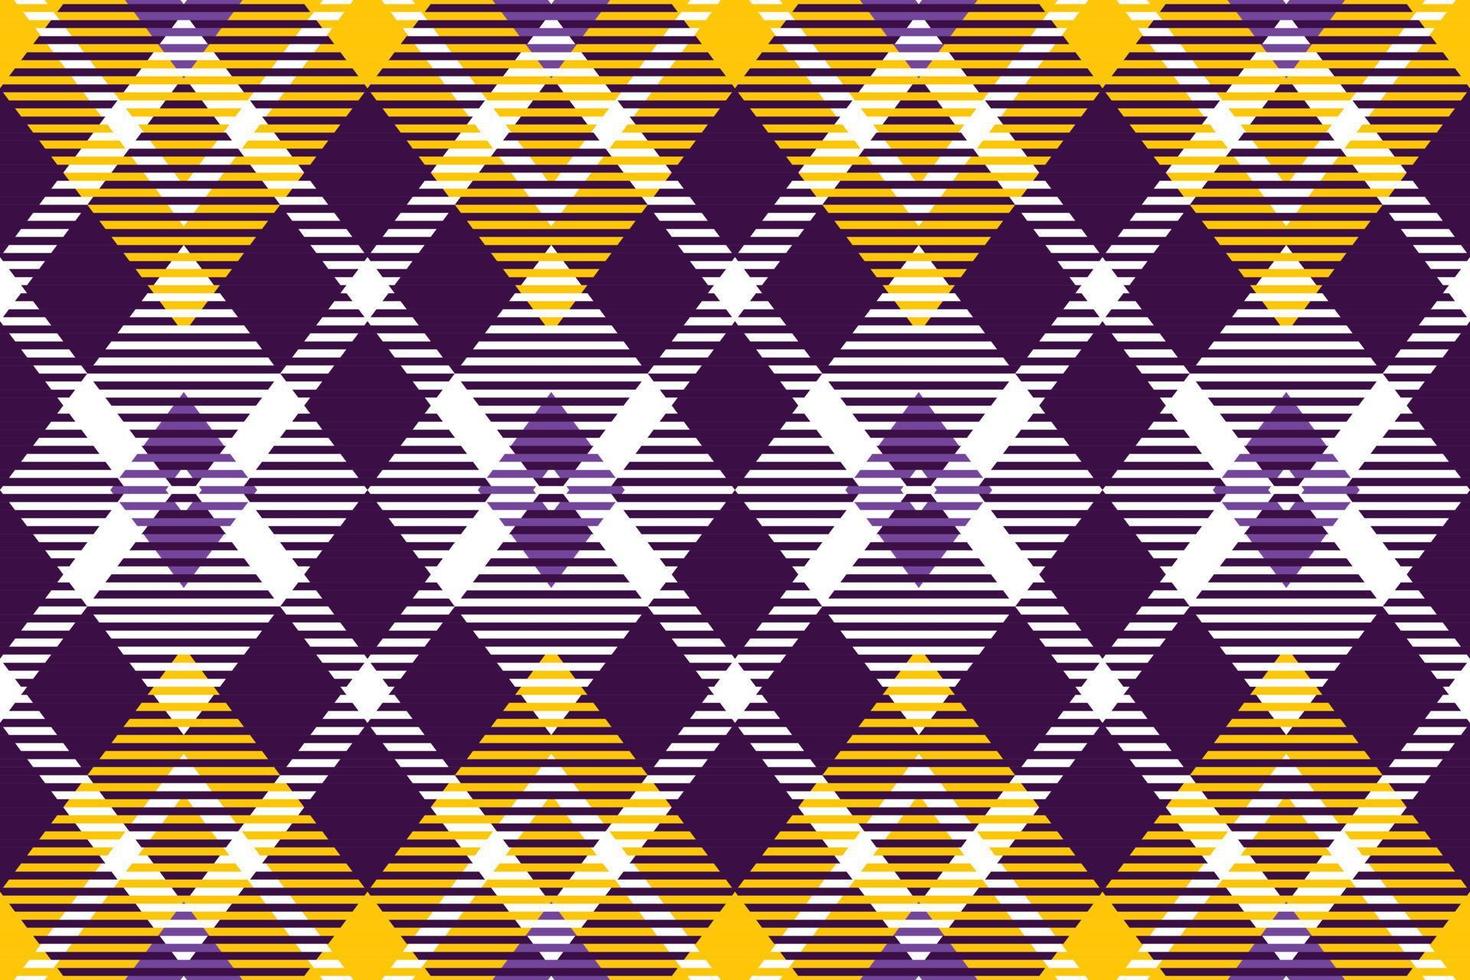 Büffel Plaid Muster Design Textil- ist ein gemustert Stoff bestehend aus von criss gekreuzt, horizontal und Vertikale Bands im mehrere Farben. Tartans sind angesehen wie ein kulturell Symbol von Schottland. vektor